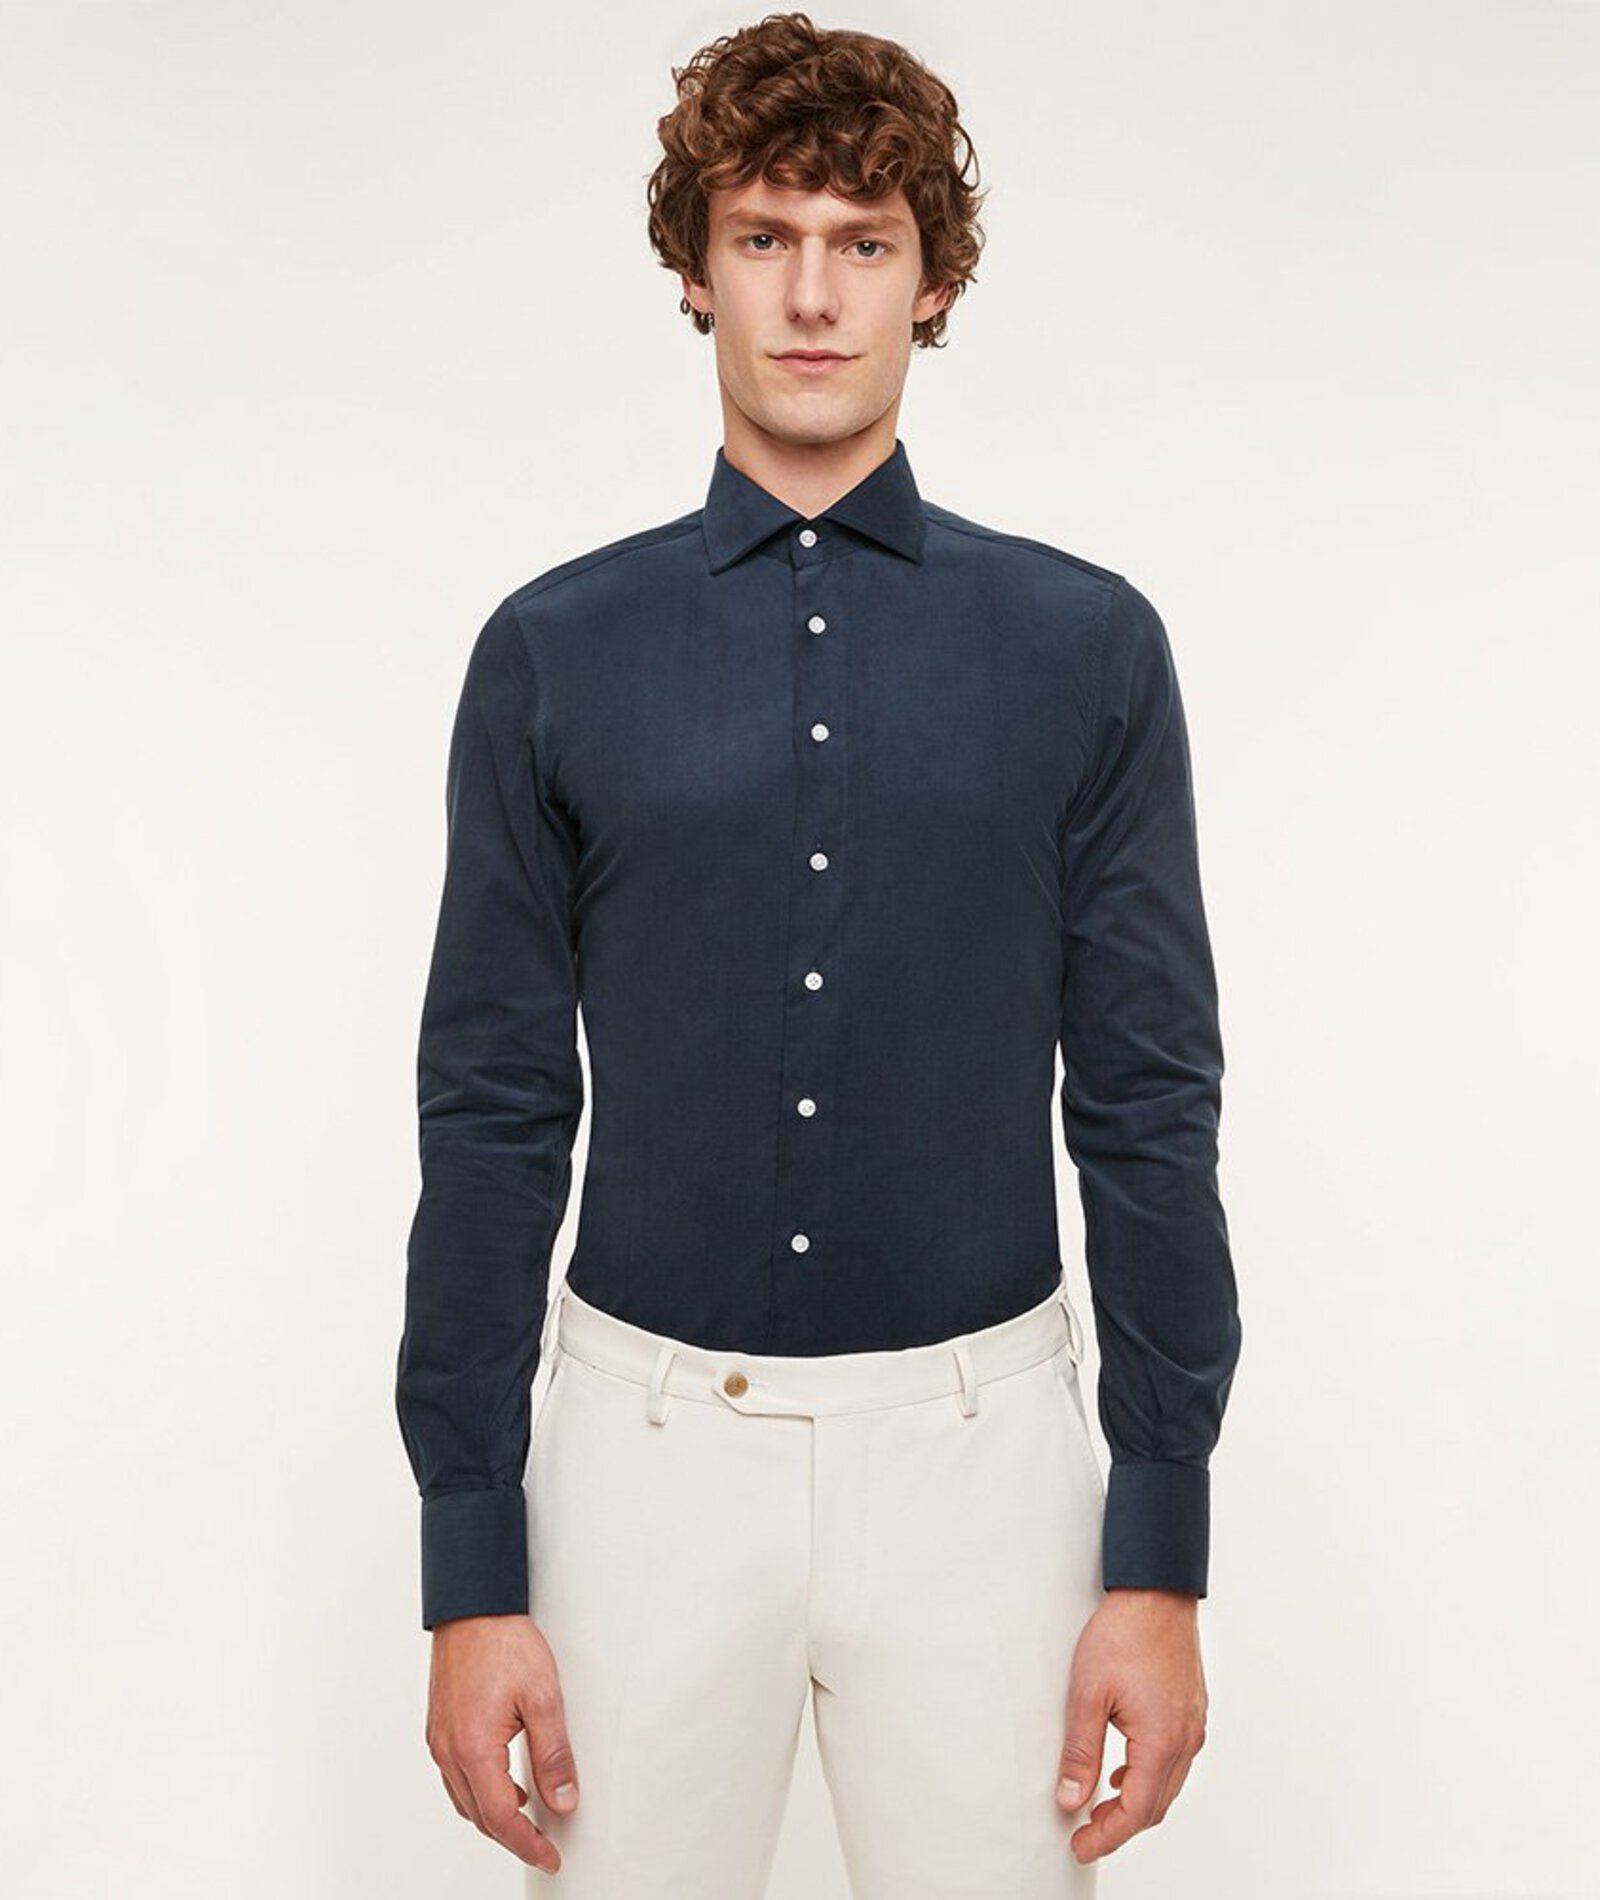 Image of Camicia da uomo su misura, Canclini, Velluto Millerighe Blu 100% Cotone, Autunno Inverno | Lanieri